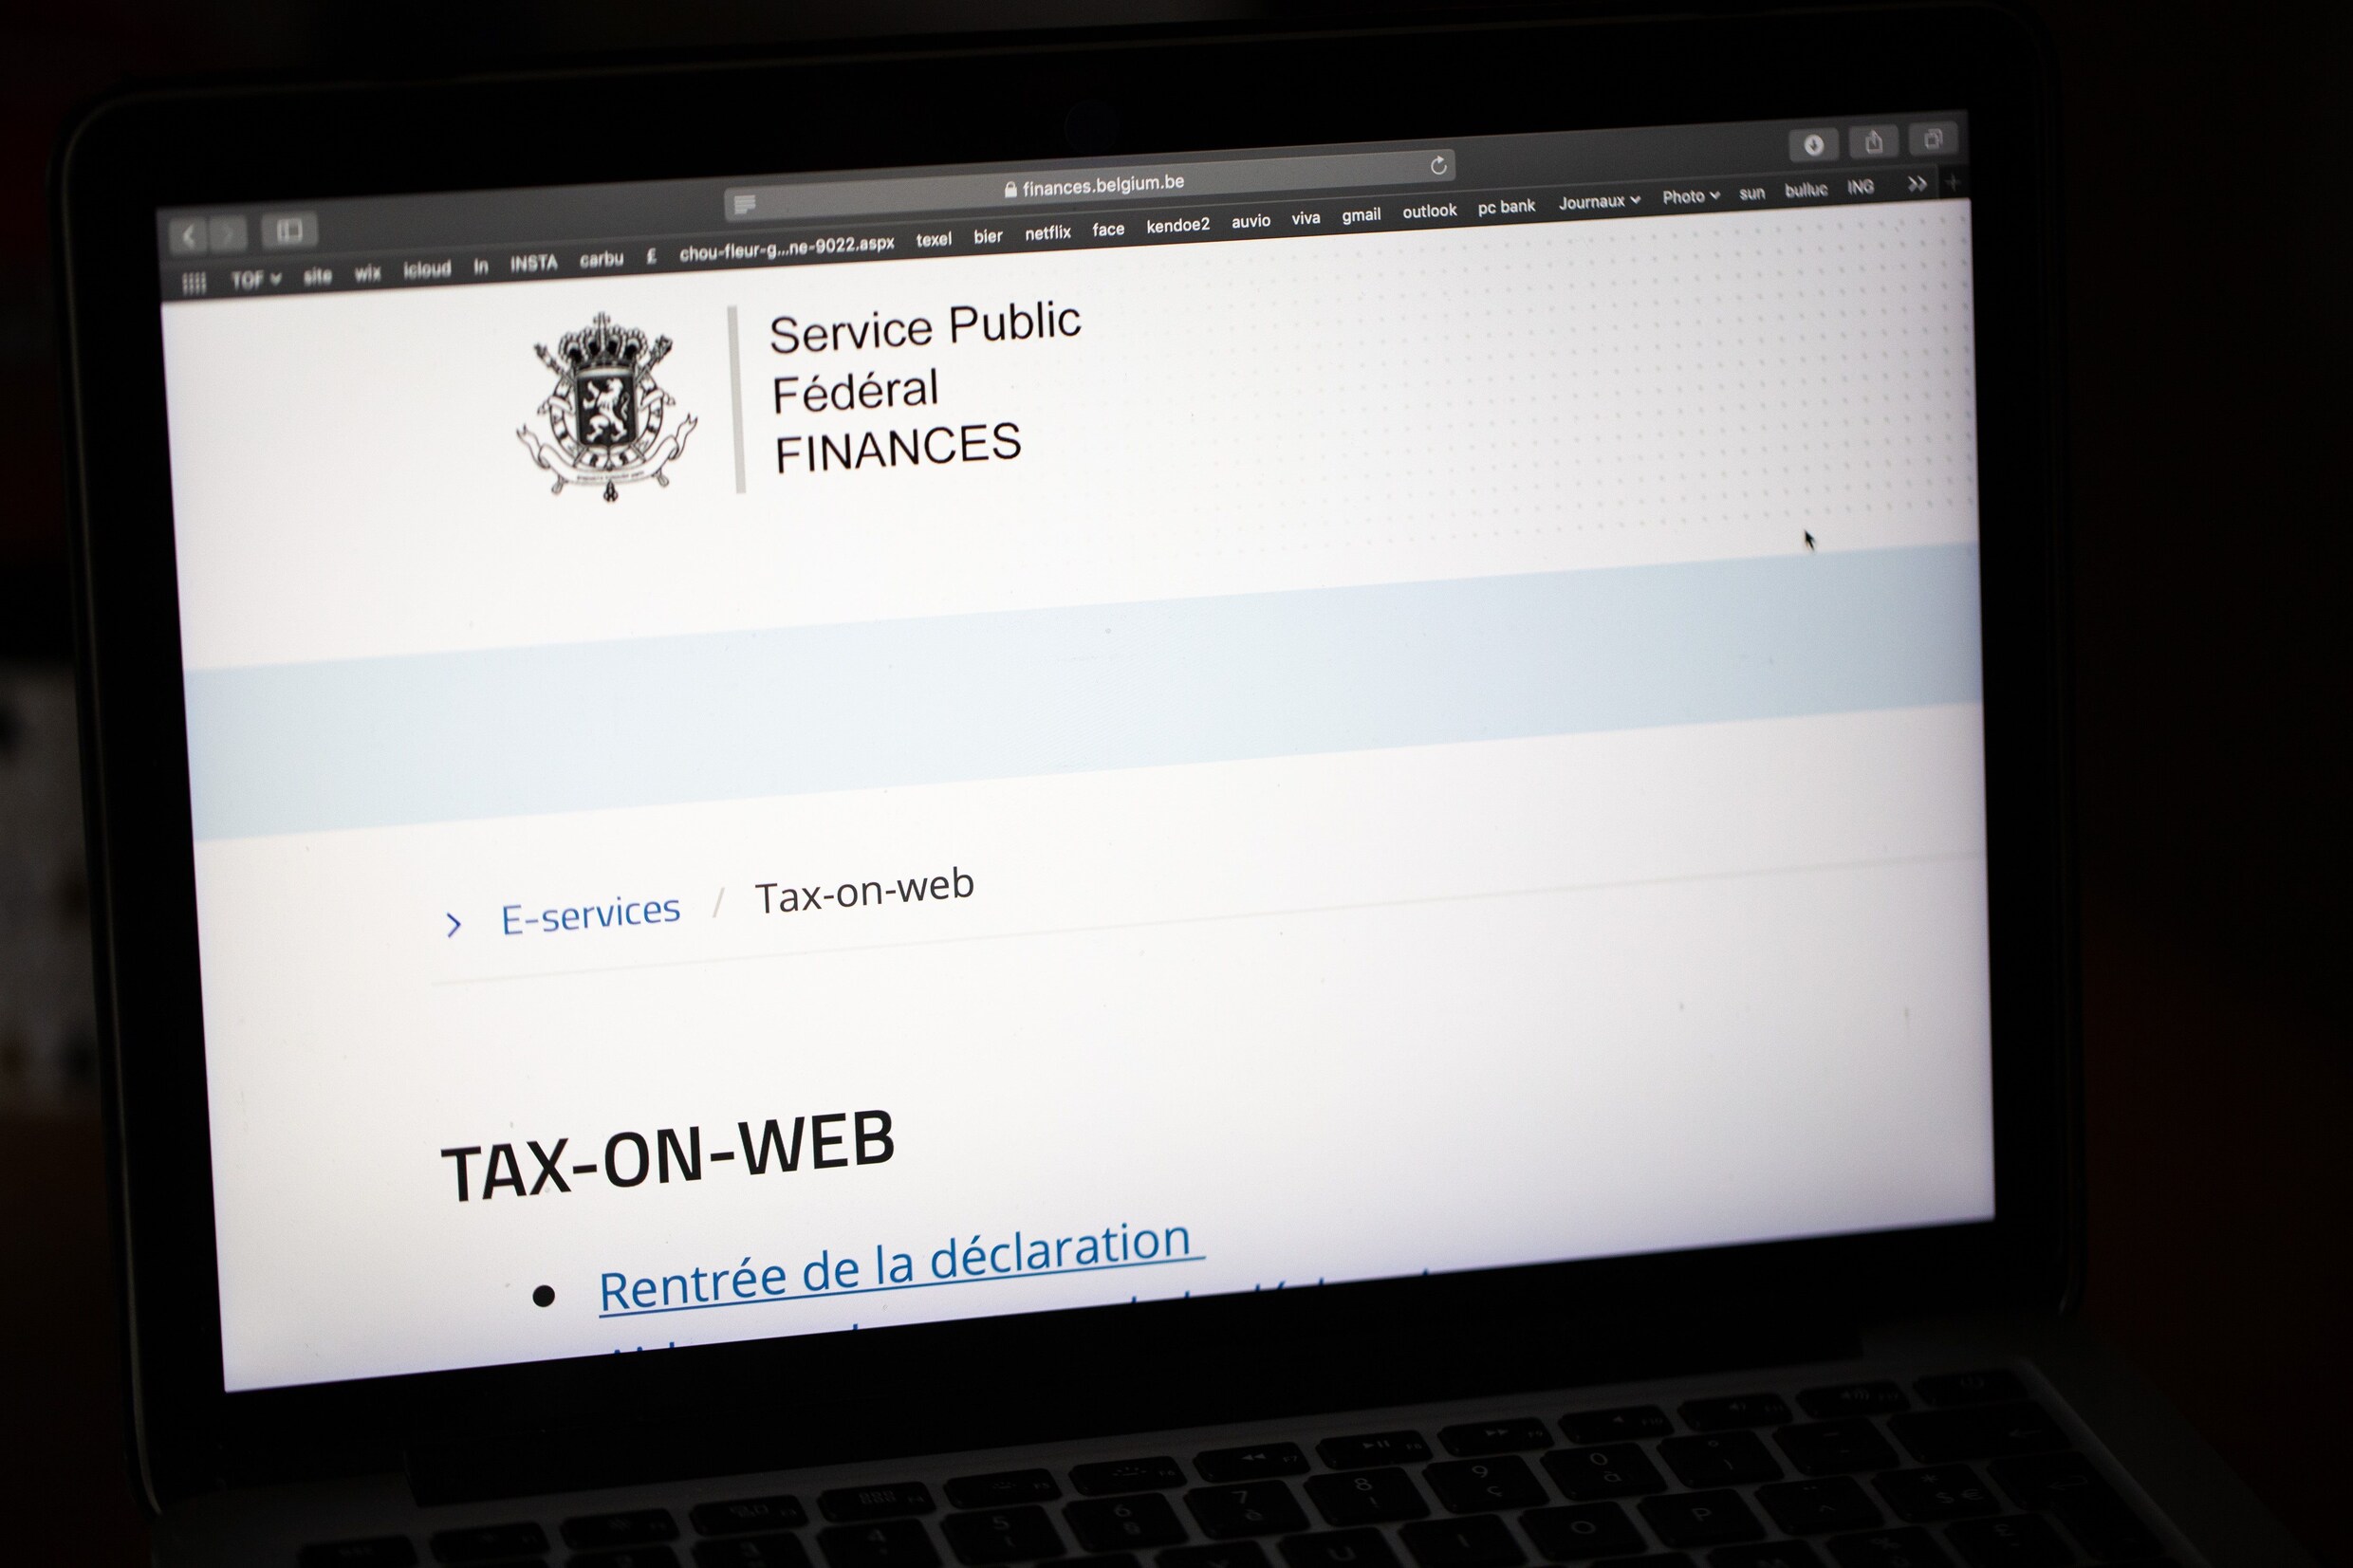 Deadline belastingaangifte via Tax-on-web uitgesteld tot maandag 15 juli